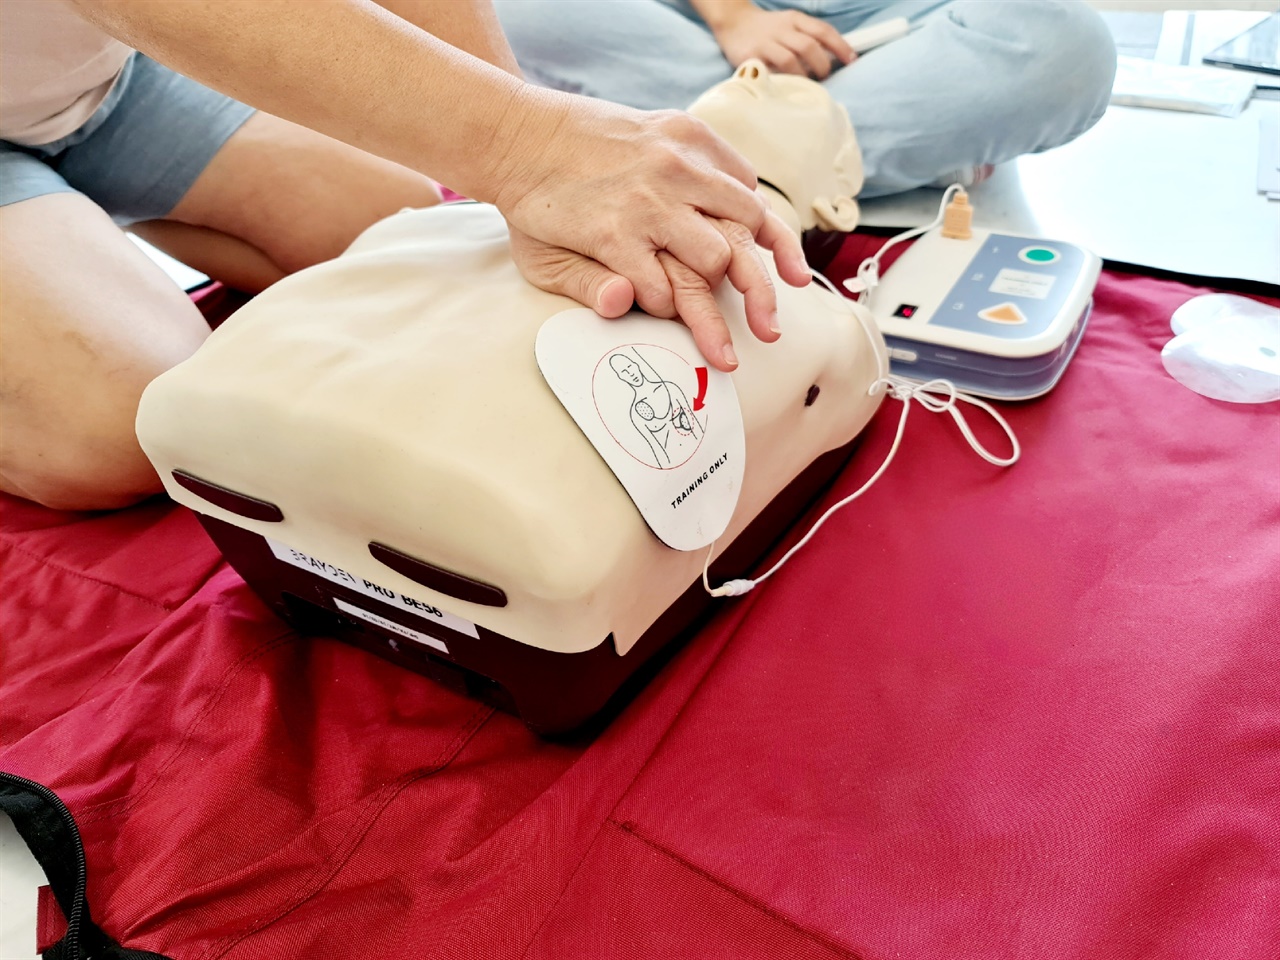 교육받던 날, 한 참가자가 자동심장충격기(AED)로 자동심장충격을 준 후 심폐소생술(CPR)을 시행하고 있는 모습.